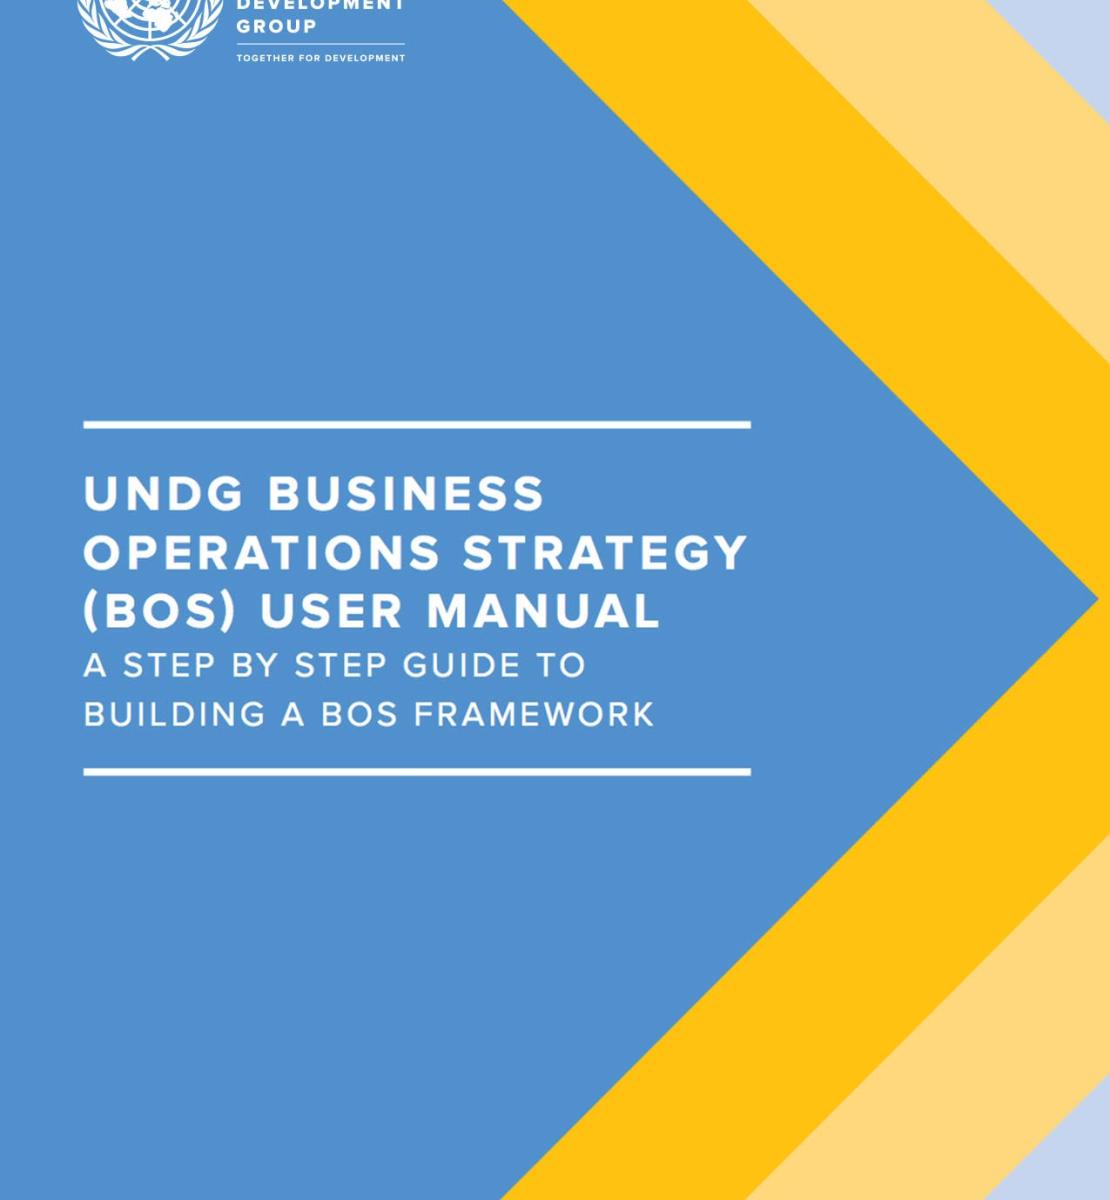 دليل مستخدم استراتيجية مجموعة الأمم المتحدة الإنمائية لتسيير الأعمال: دليل يشرح كيفية بناء إطار عمل الاستراتيجية خطوة بخطوة